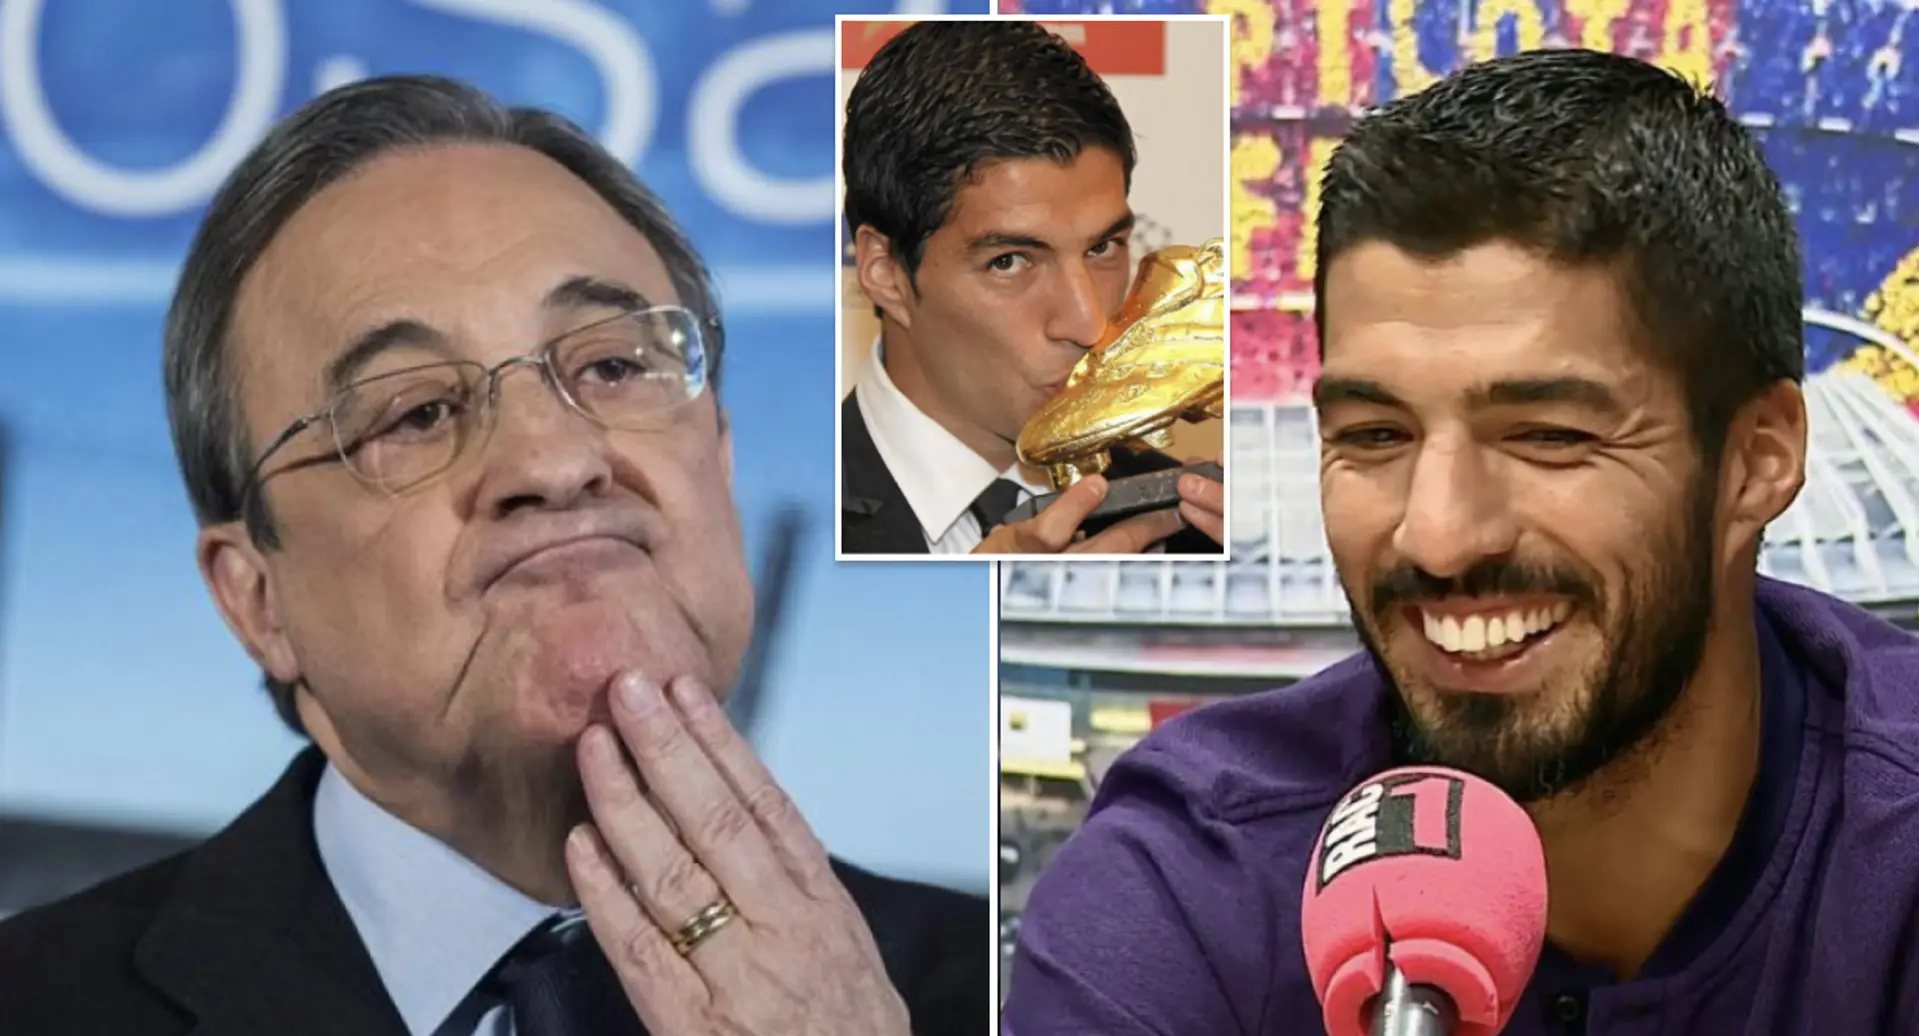 Luis Suarez verrät, warum er 2014 den Wechsel zu Real zugunsten von Barça abgelehnt hat